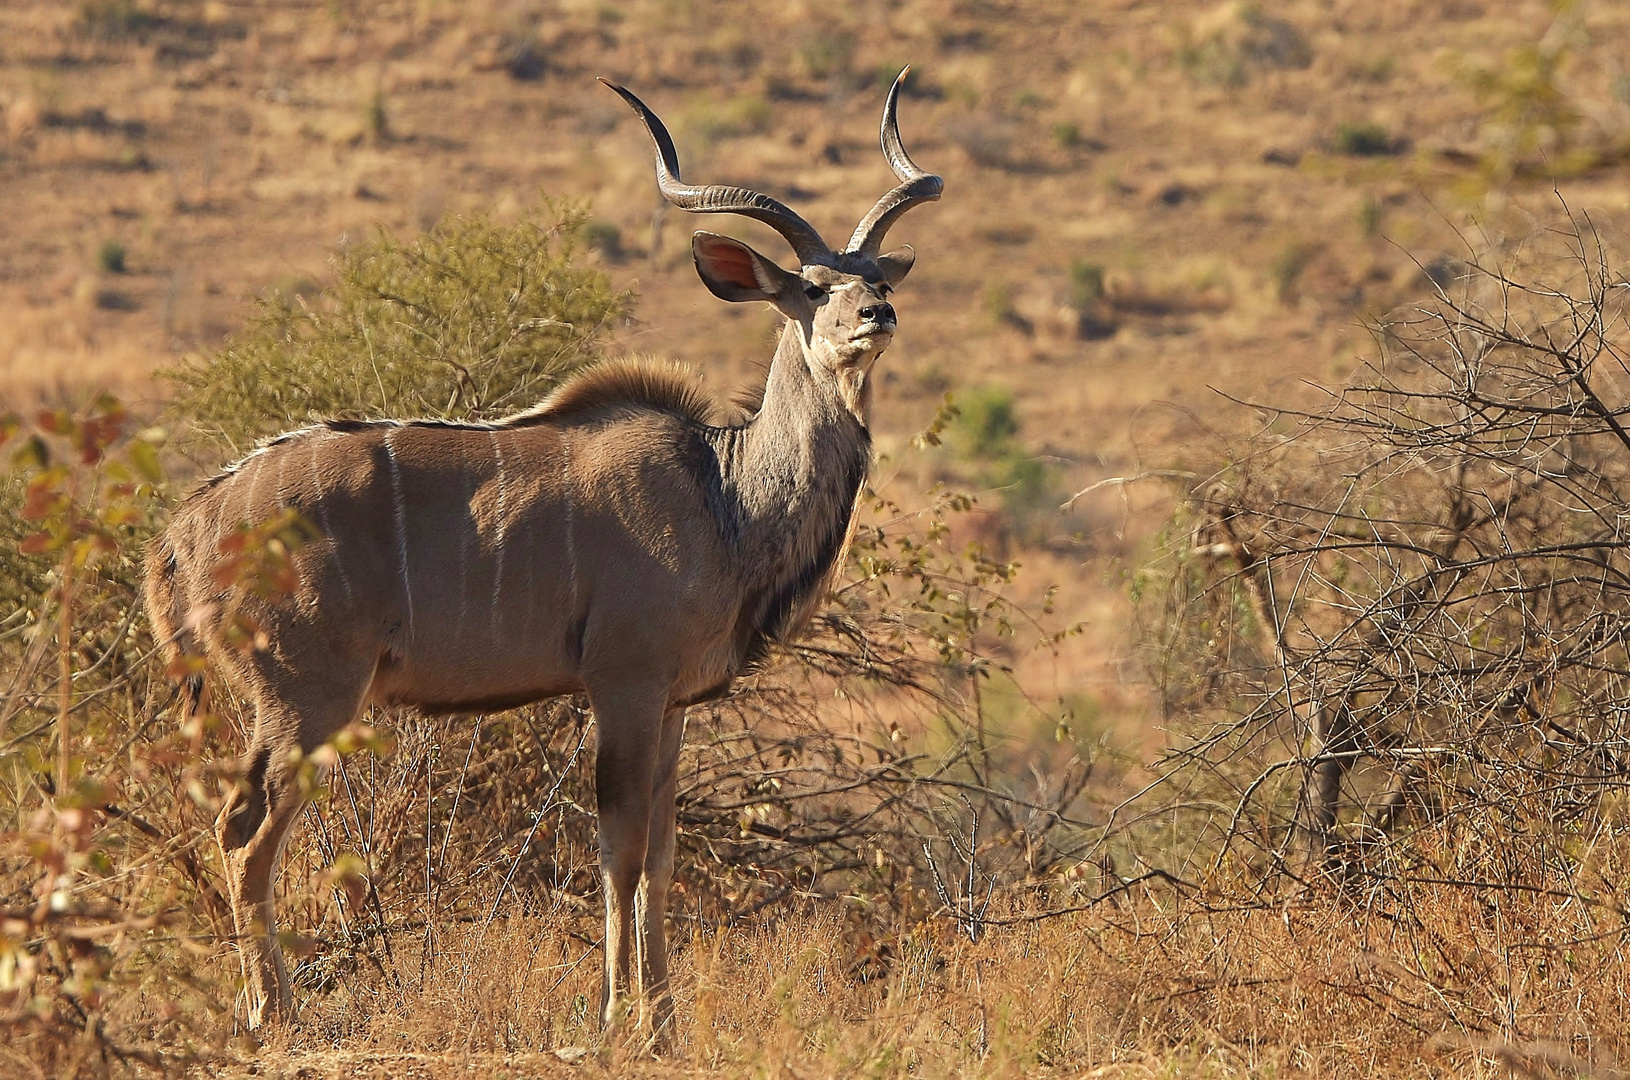 This is Africa - Kudu Bull